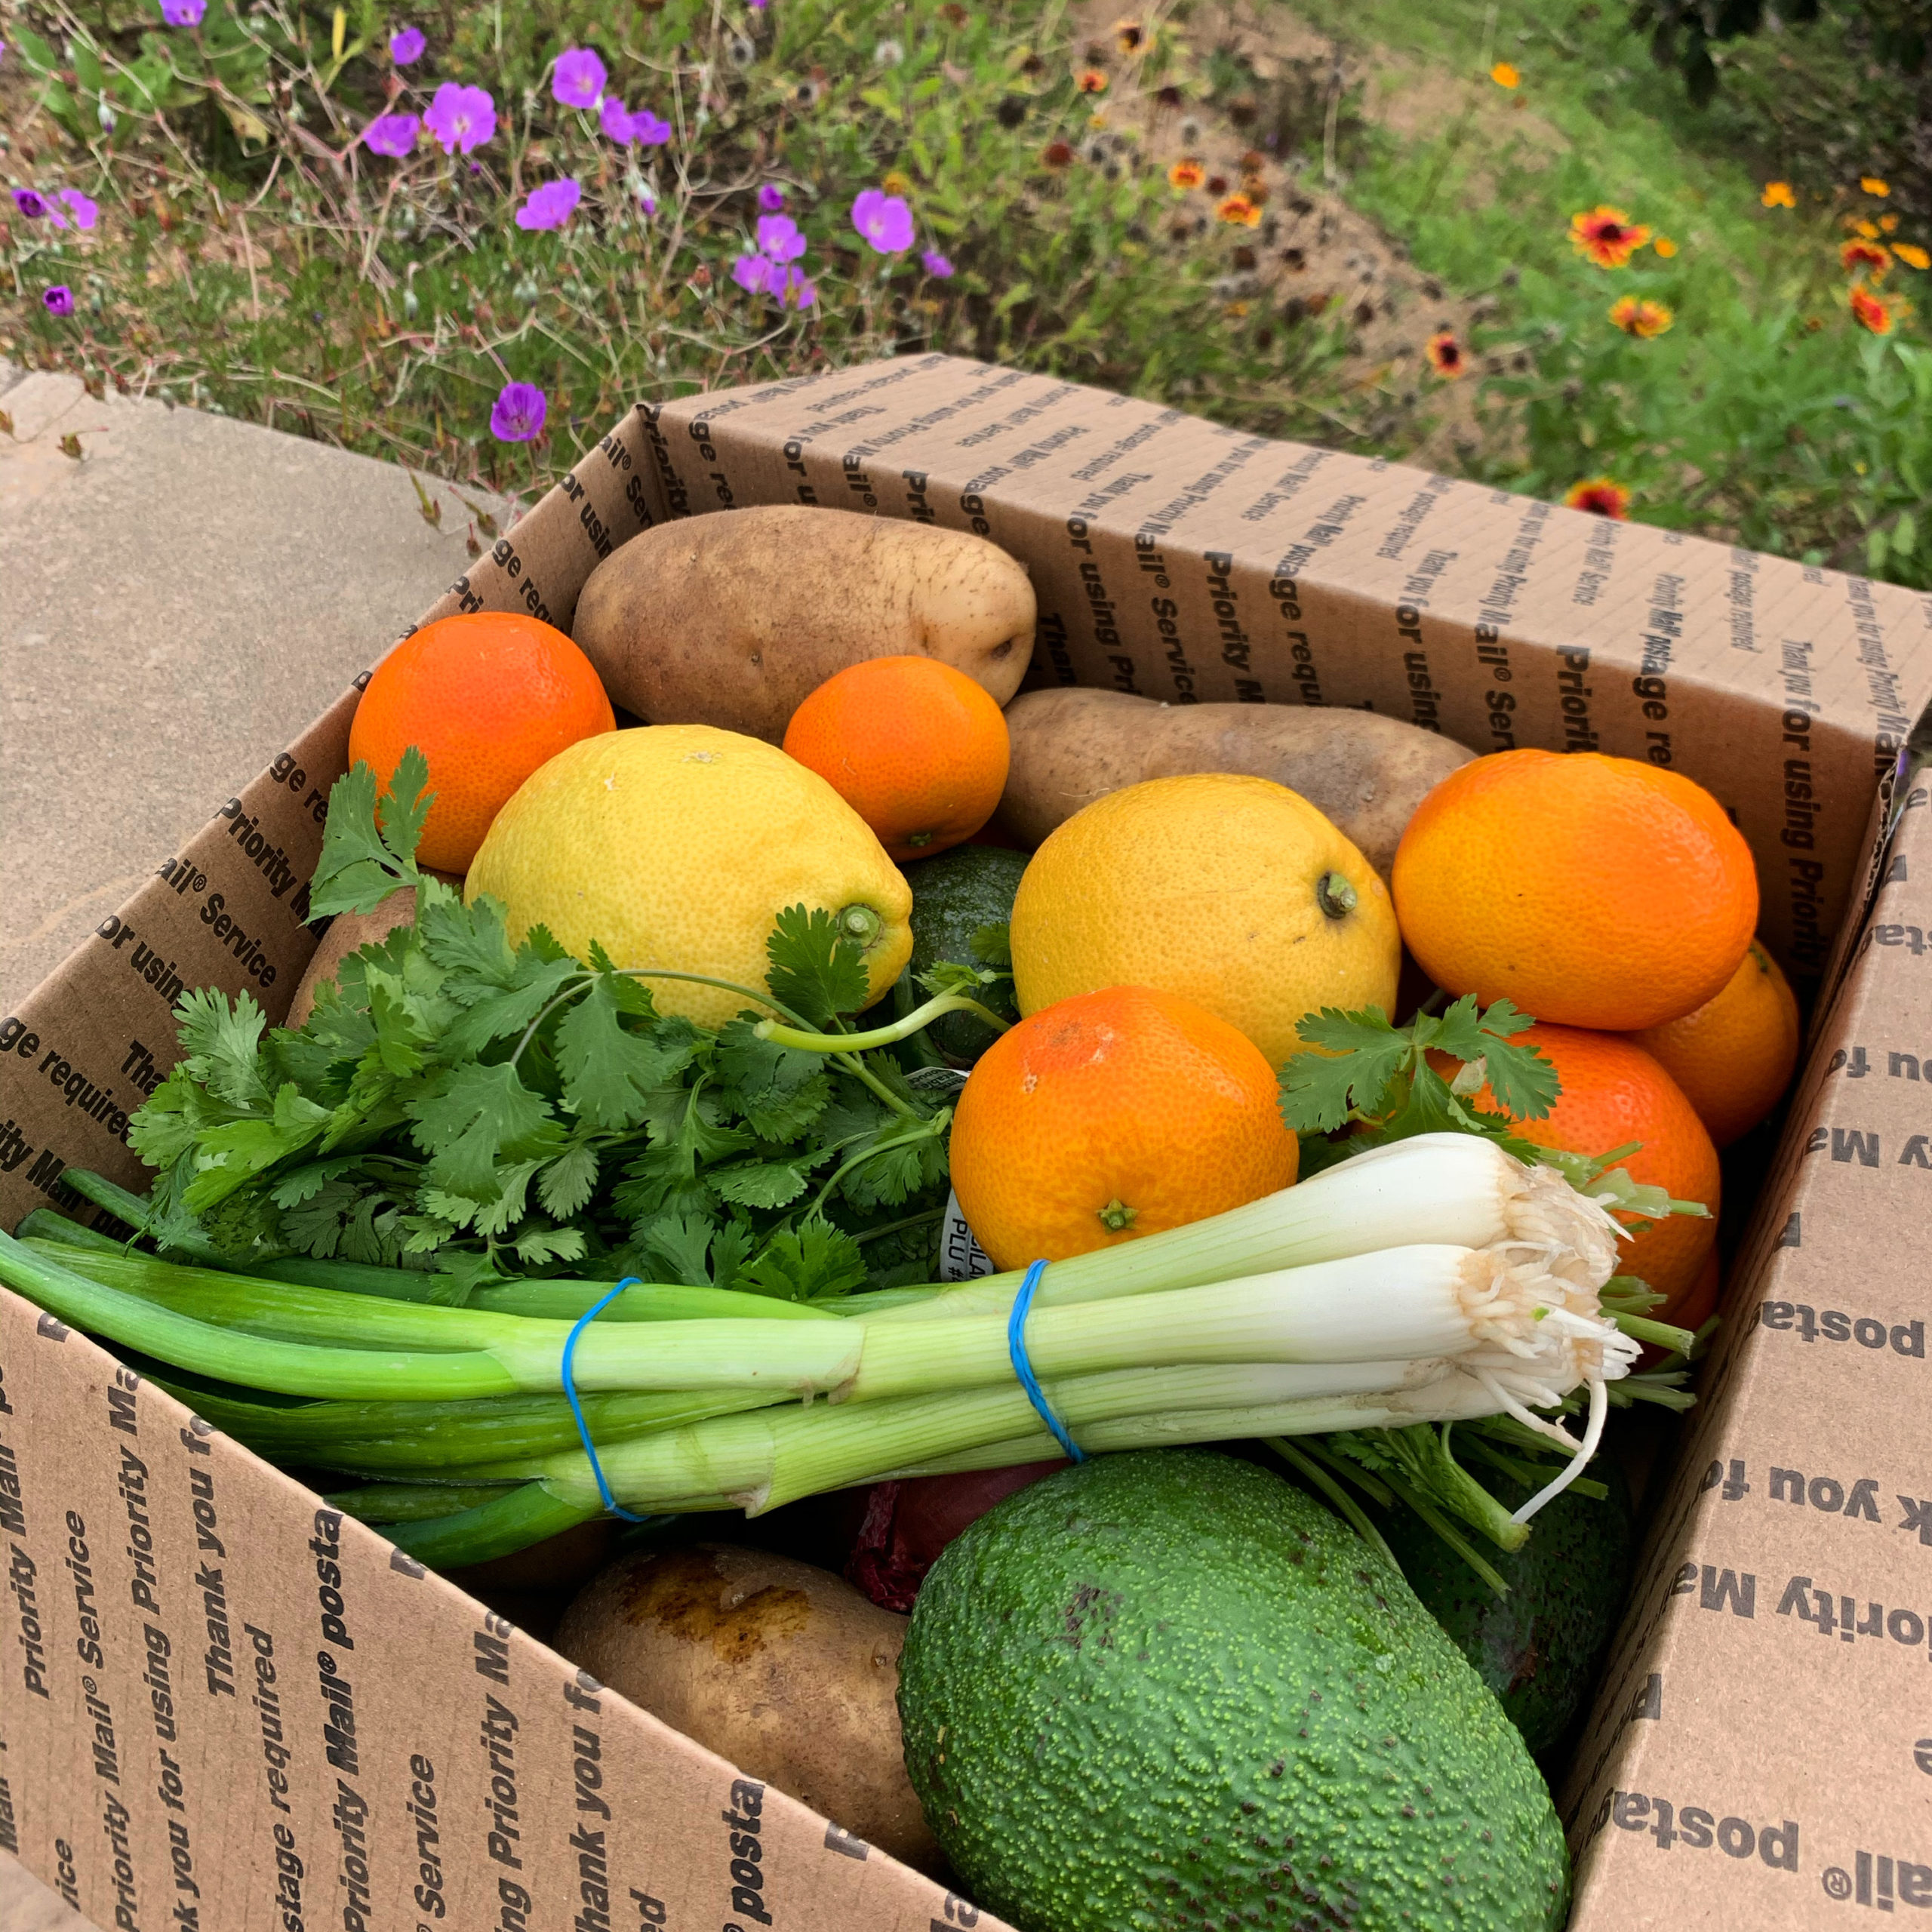 Variety box of produce